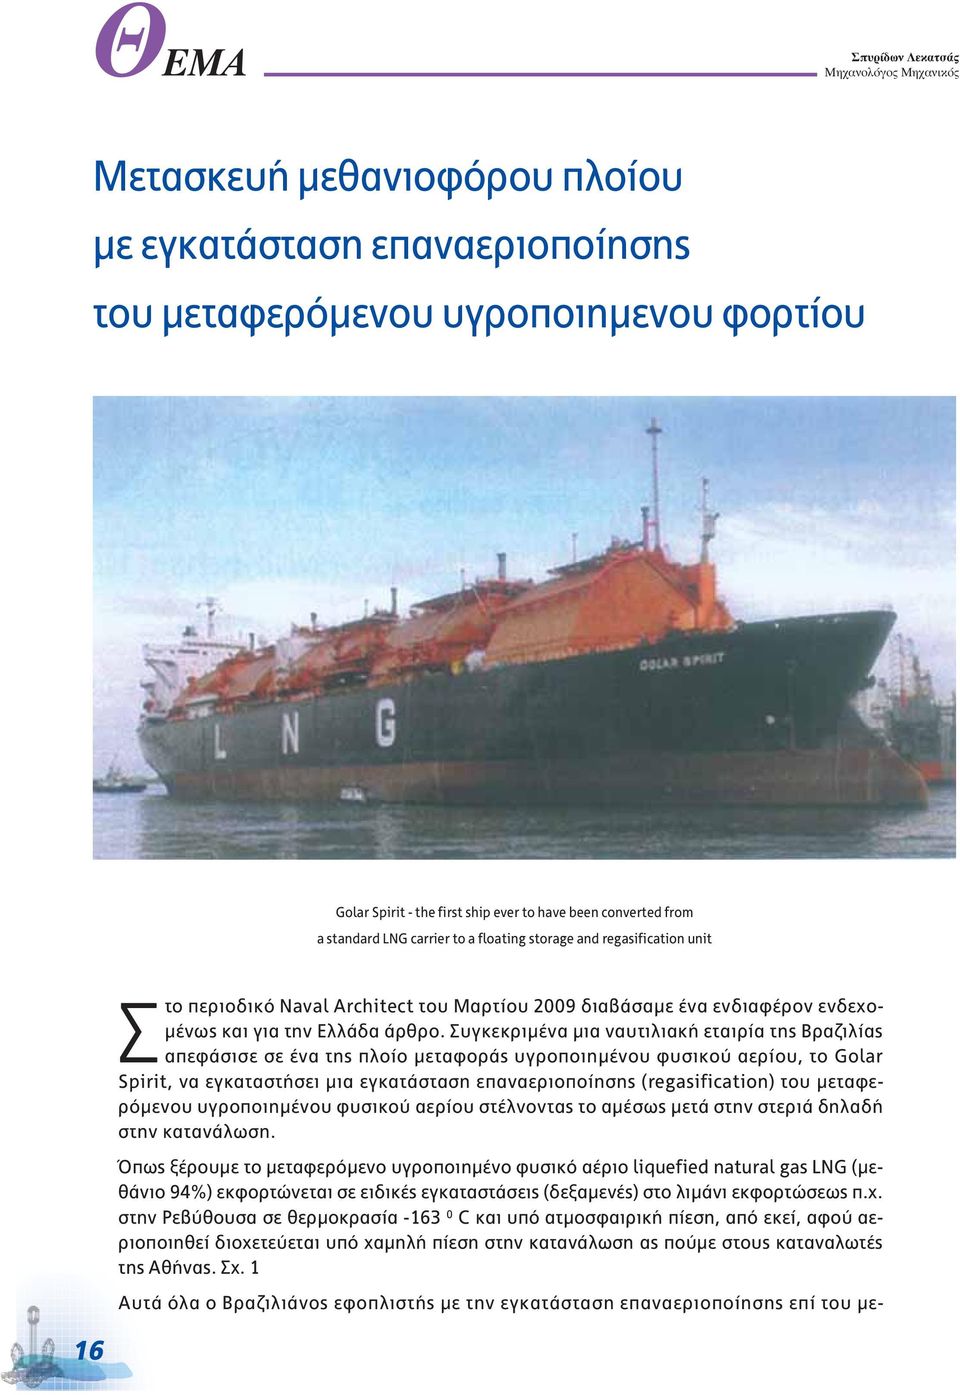 Συγκεκριμένα μια ναυτιλιακή εταιρία της Βραζιλίας απεφάσισε σε ένα της πλοίο μεταφοράς υγροποιημένου φυσικού αερίου, το Golar Spirit, να εγκαταστήσει μια εγκατάσταση επαναεριοποίησης (regasification)